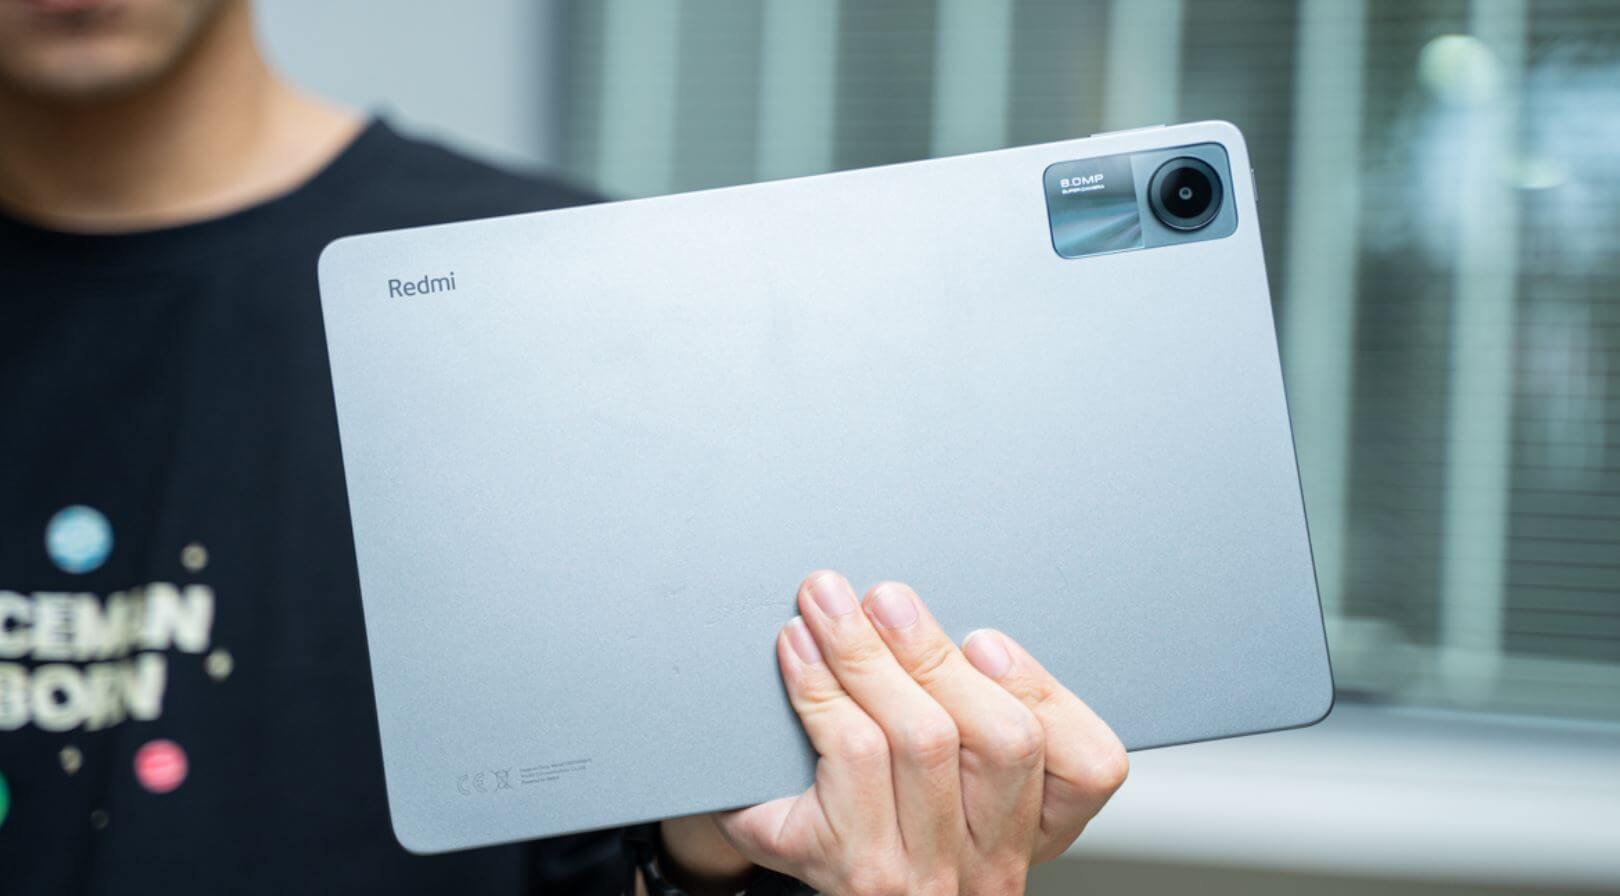 Недорогой планшет на Андроид с мощным аккумулятором. Новый планшет Redmi уже доступен на распродаже по сказочно низкой цене. Фото.